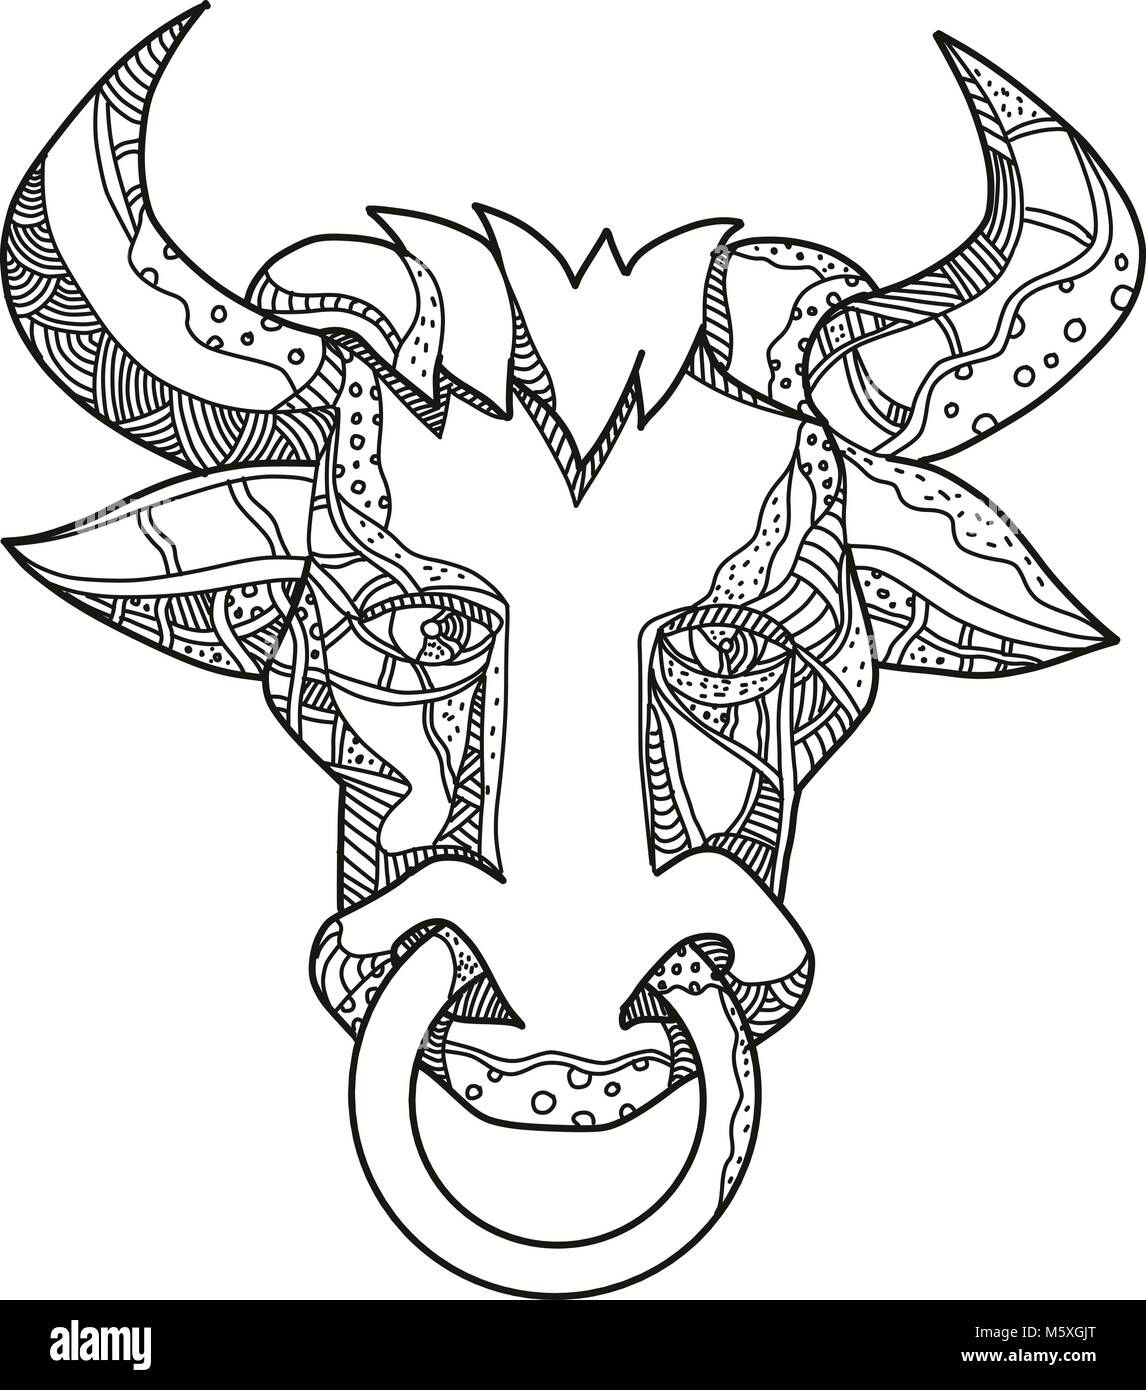 Illustration de l'art Doodle tête de taureau ou vache, Pinzgauer un breeed des bovins domestiques à partir de la région de Pinzgau, Autriche Vue de face en noir et blanc fait Illustration de Vecteur